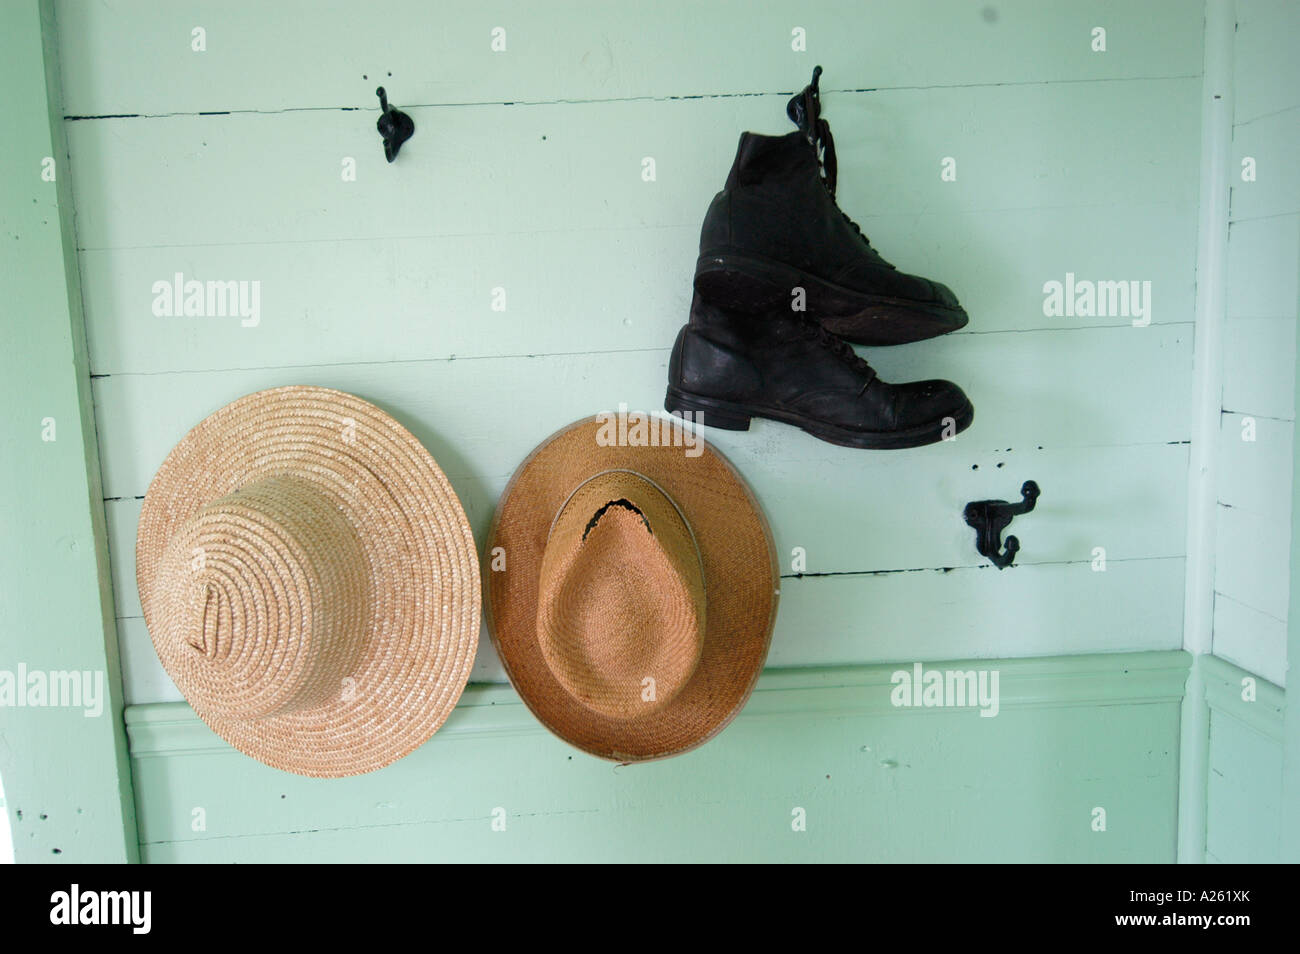 Bauern Stroh Hut aufhängen an einem Haken neben ein paar Schuhe  Stockfotografie - Alamy